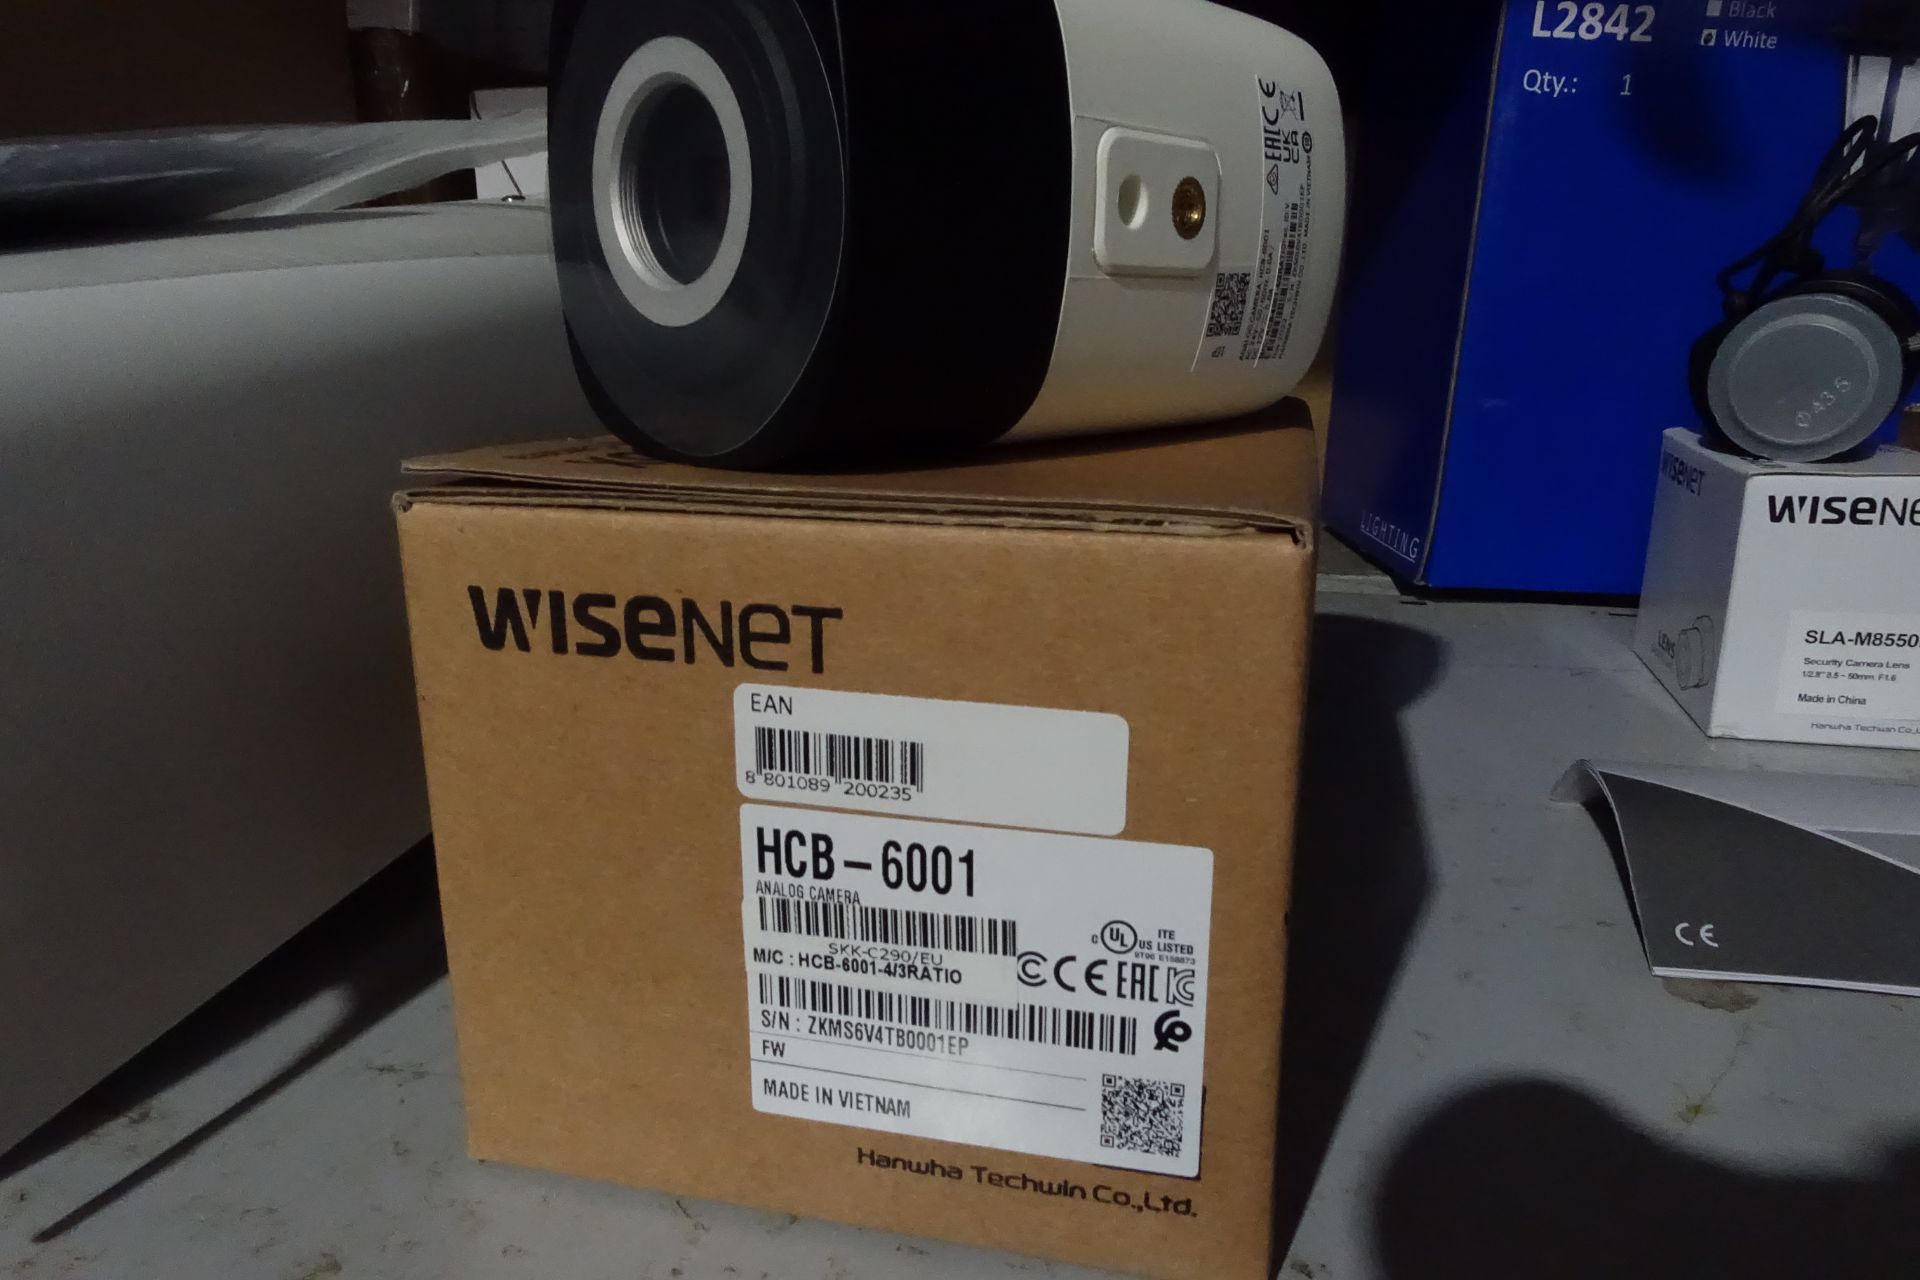 10 x WISENET HCB-6001 Security Camera 1920 x 1080 Pixels Indoor or Outdoor